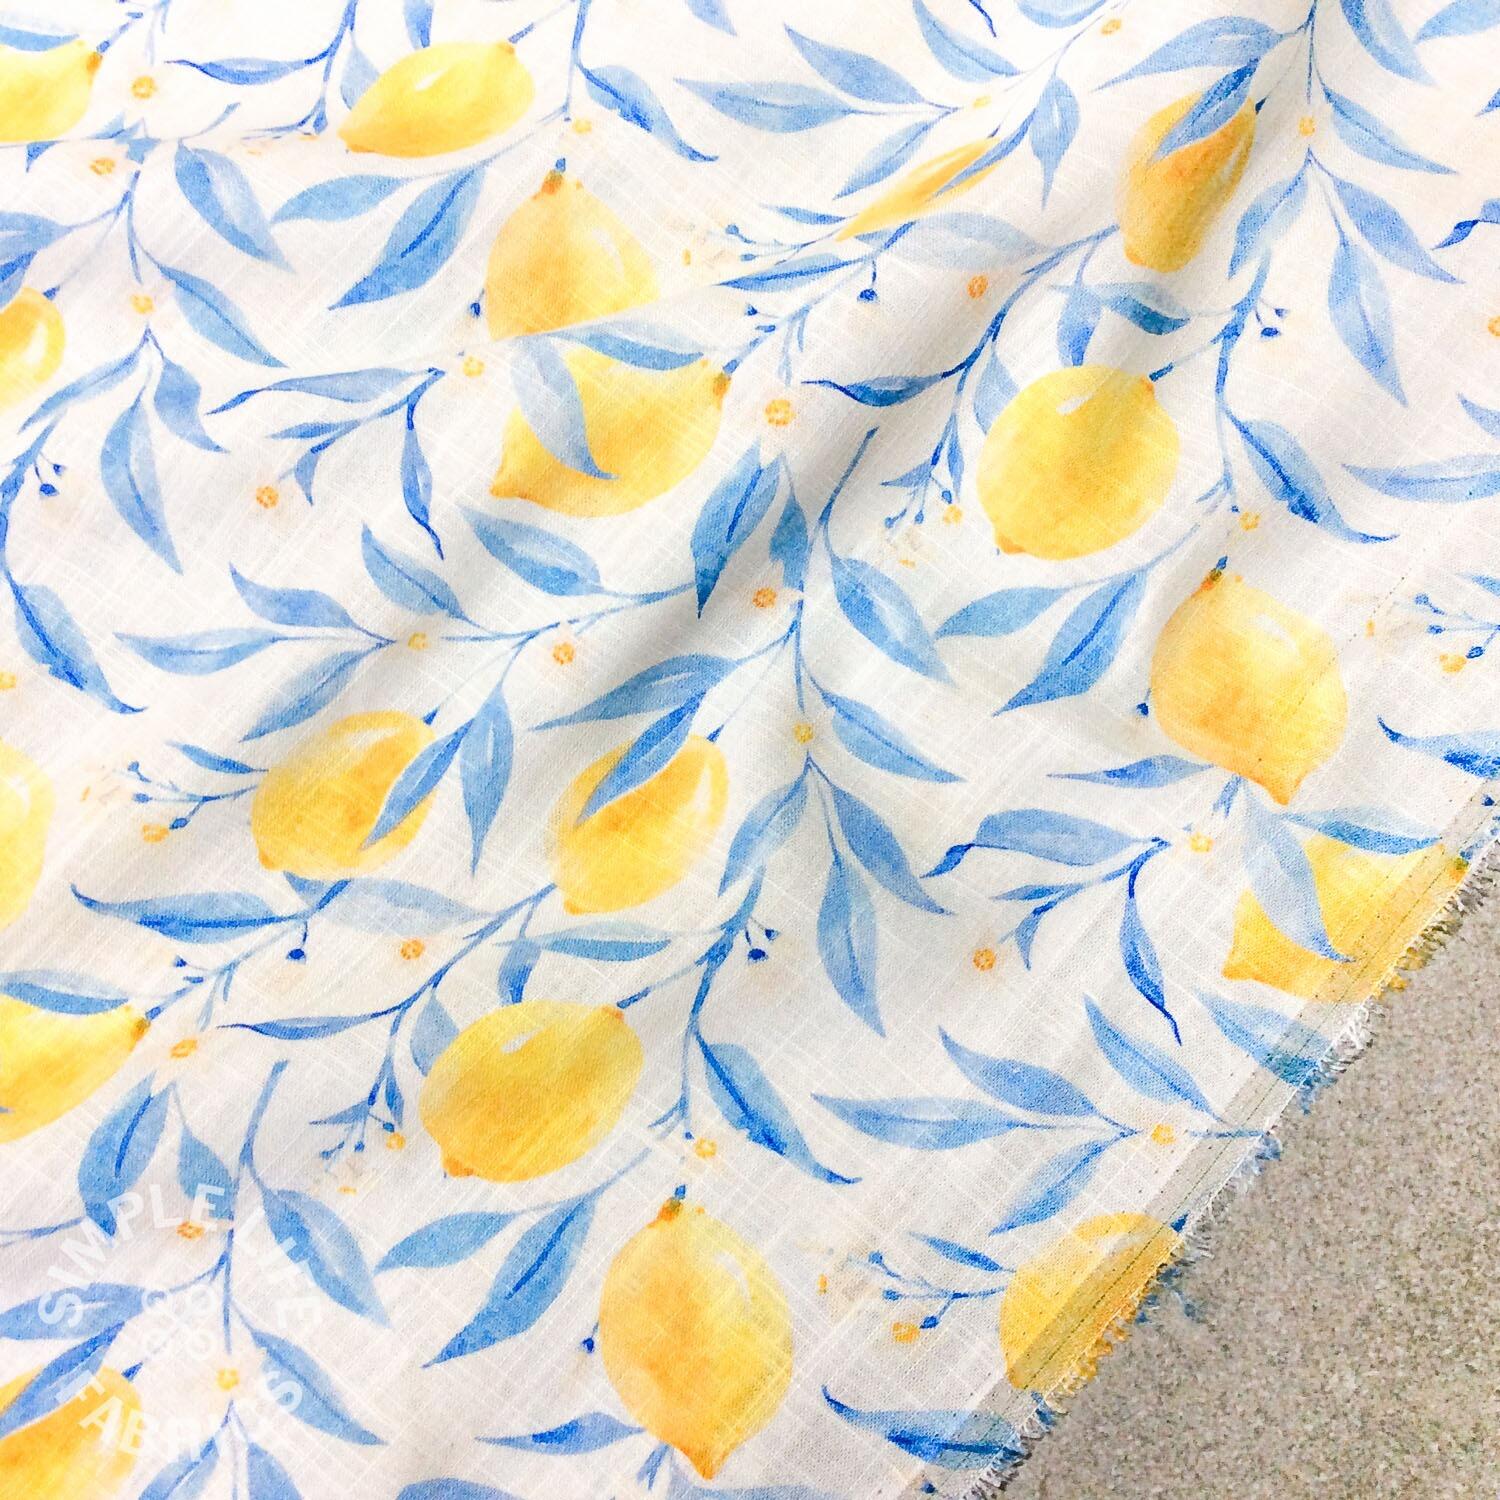 Lemons linen mix fruit dress fabric